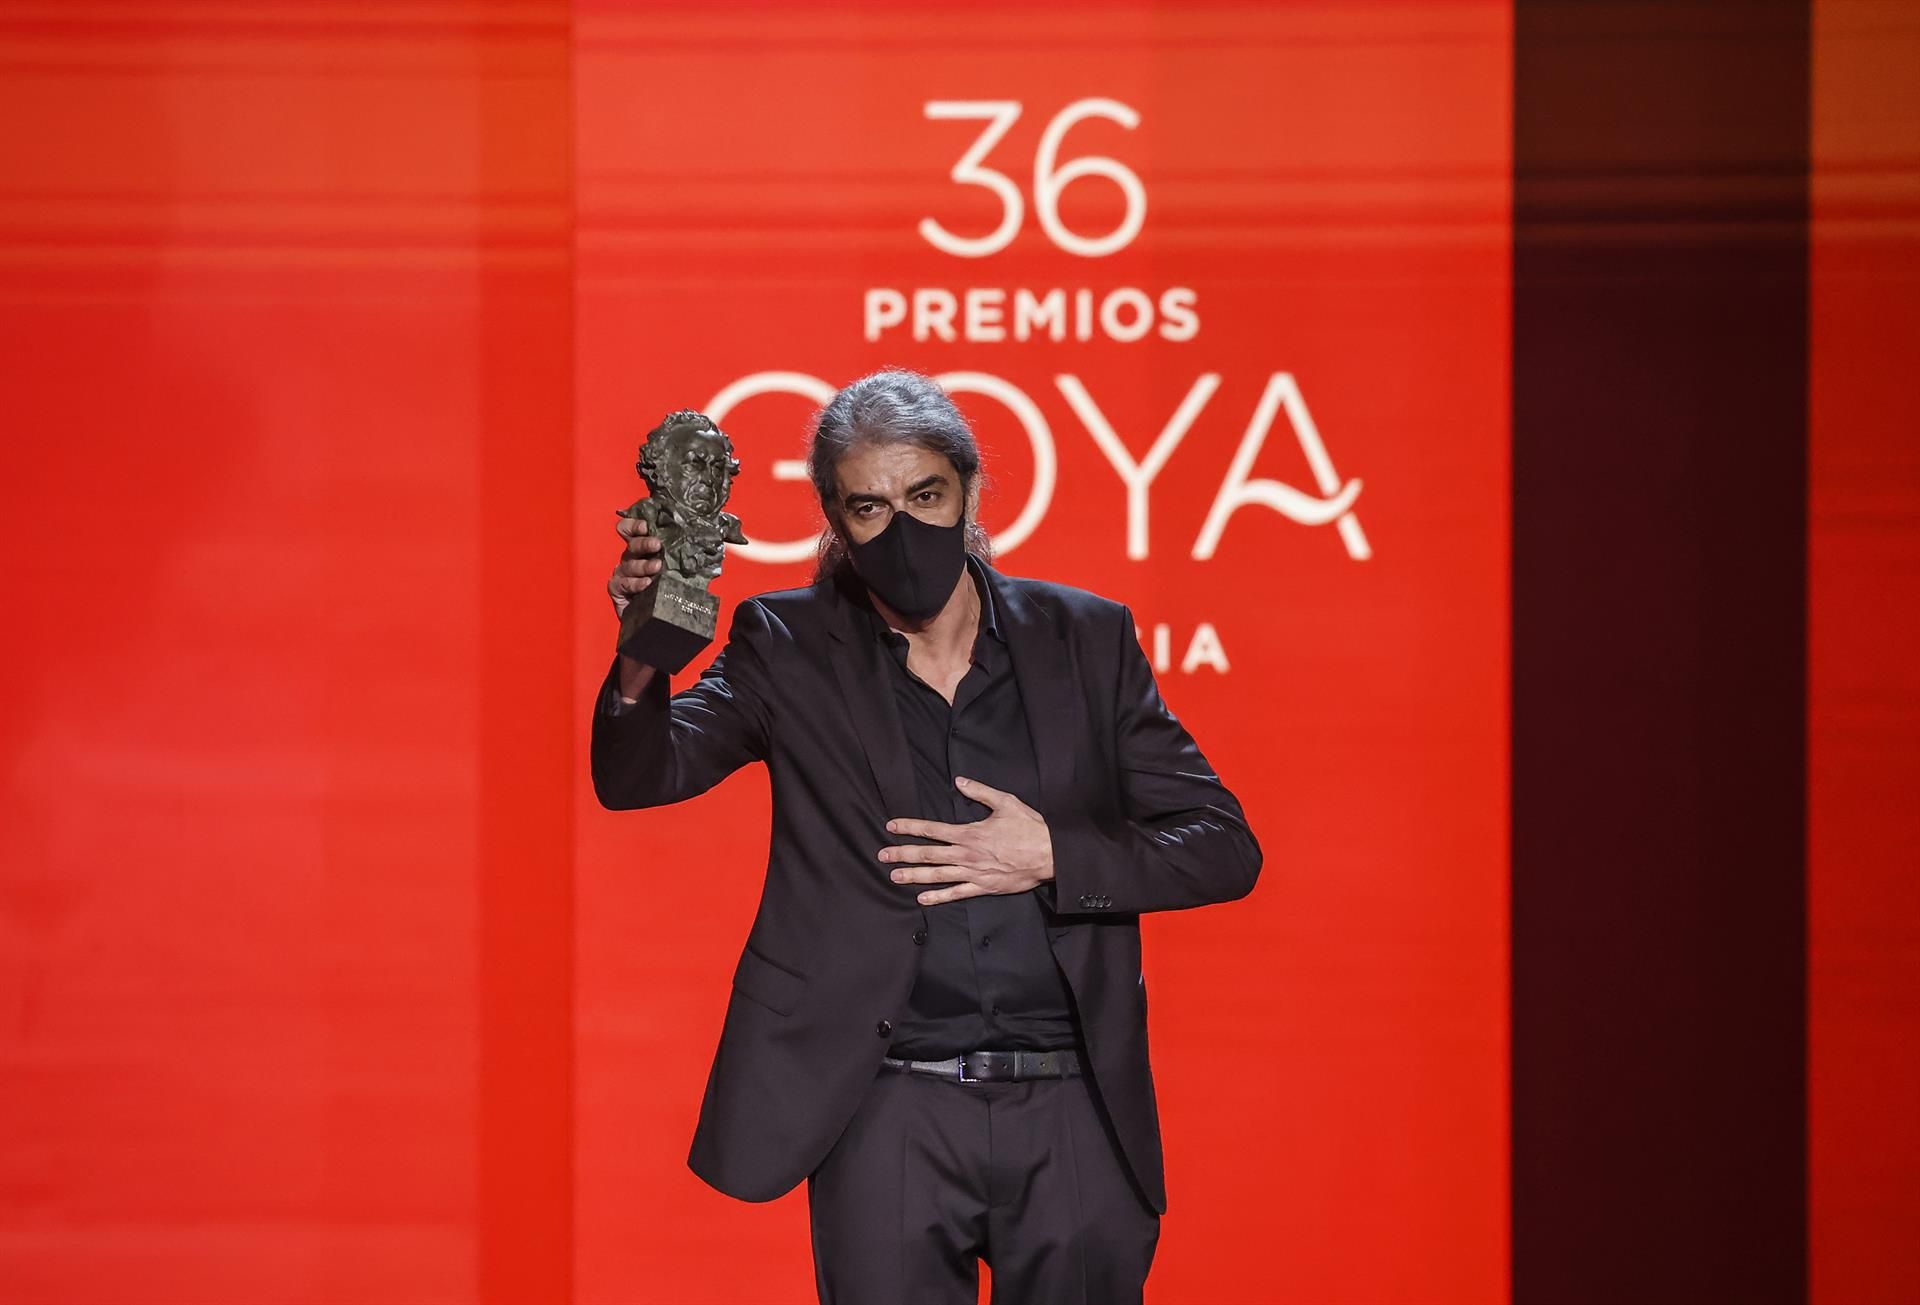 Premios Goya: 31 años, 31 datos curiosos